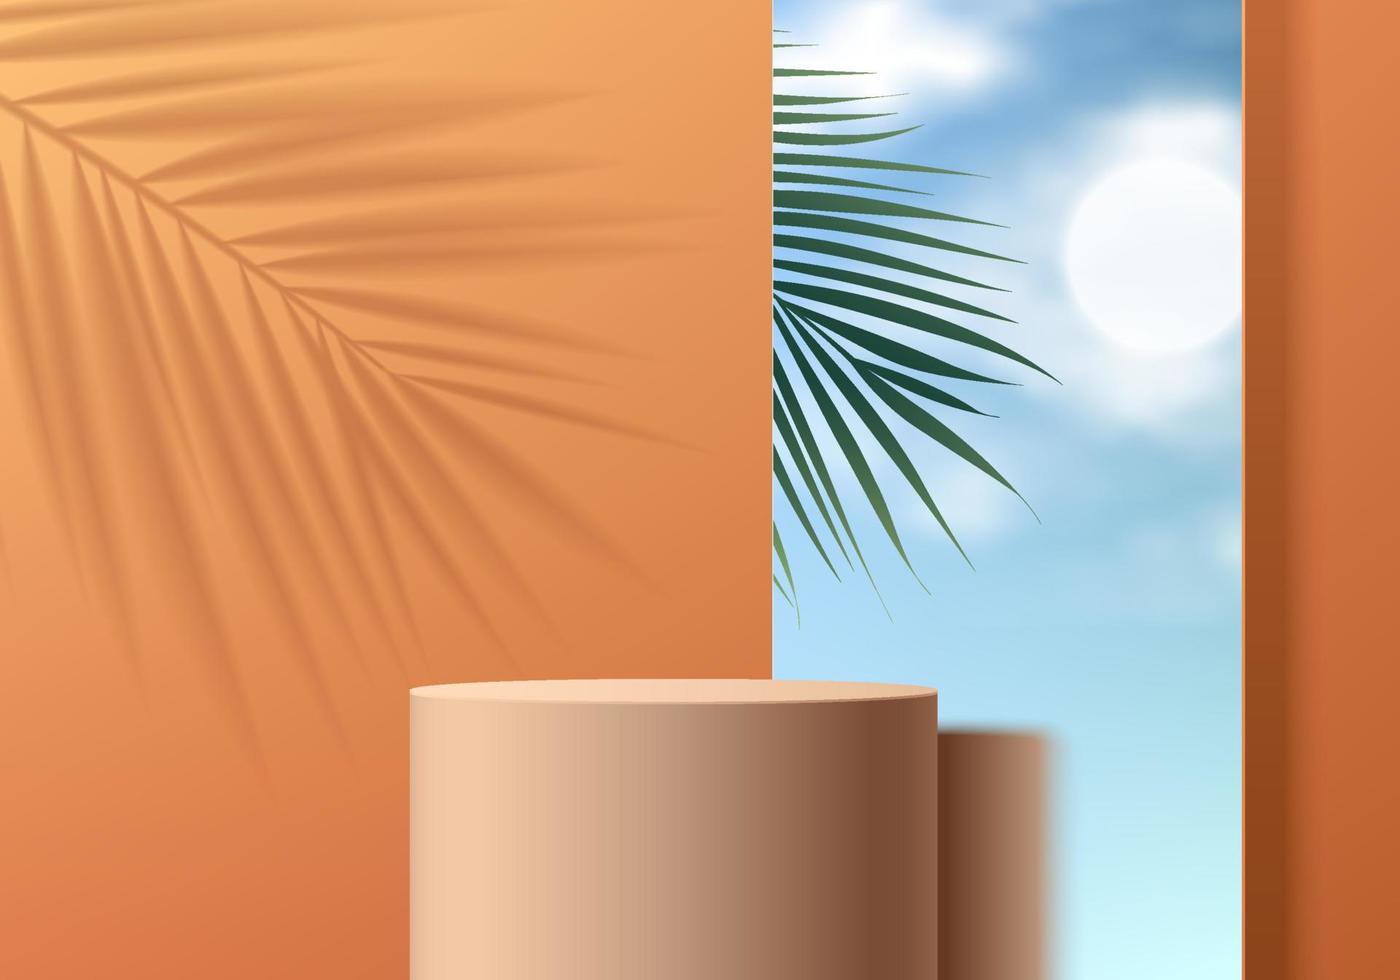 podio de soporte de cilindro naranja 3d realista con cielo azul en lentes de espejo, fondo de sombra de hoja de palma. Resumen de vectores con formas geométricas. escena mínima de verano para exhibición de productos. vitrina escénica.